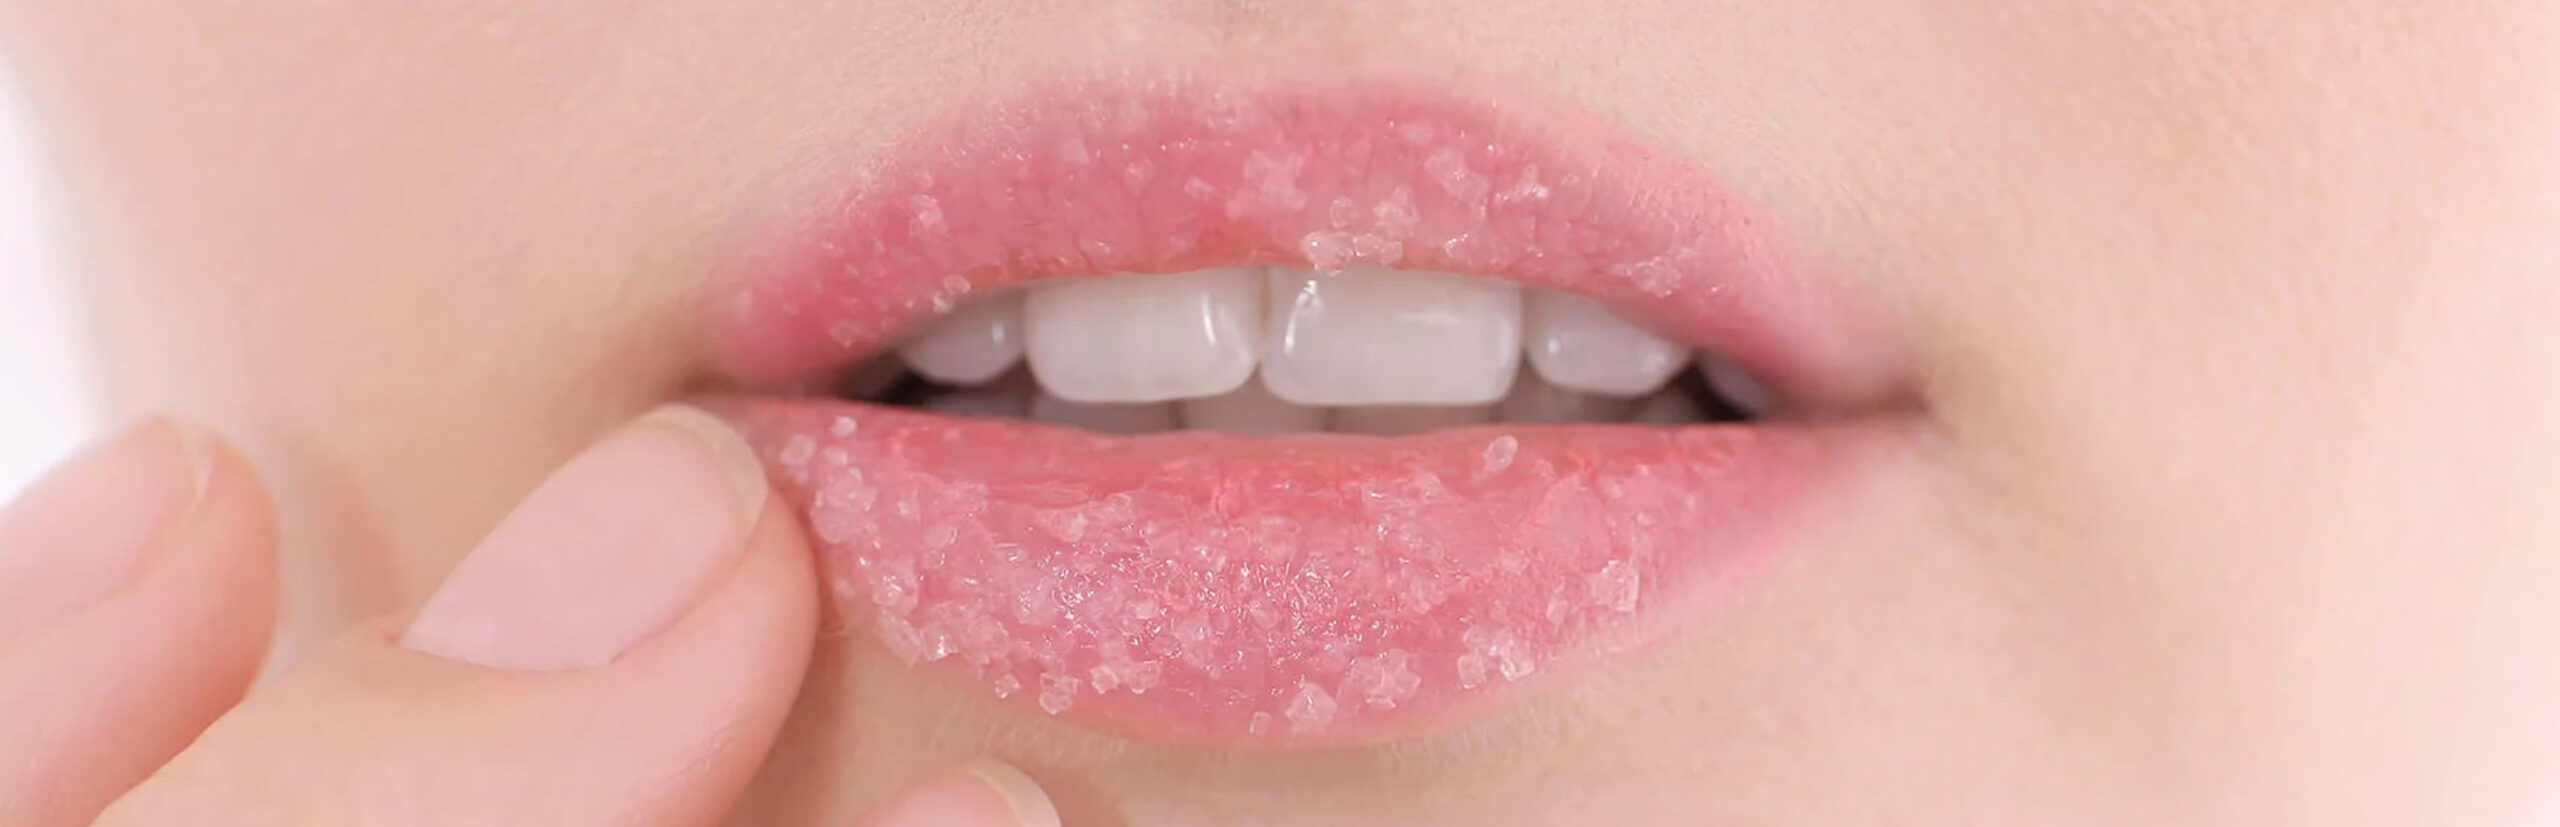 natural-sugar-lip-scrub-for-pink-lips